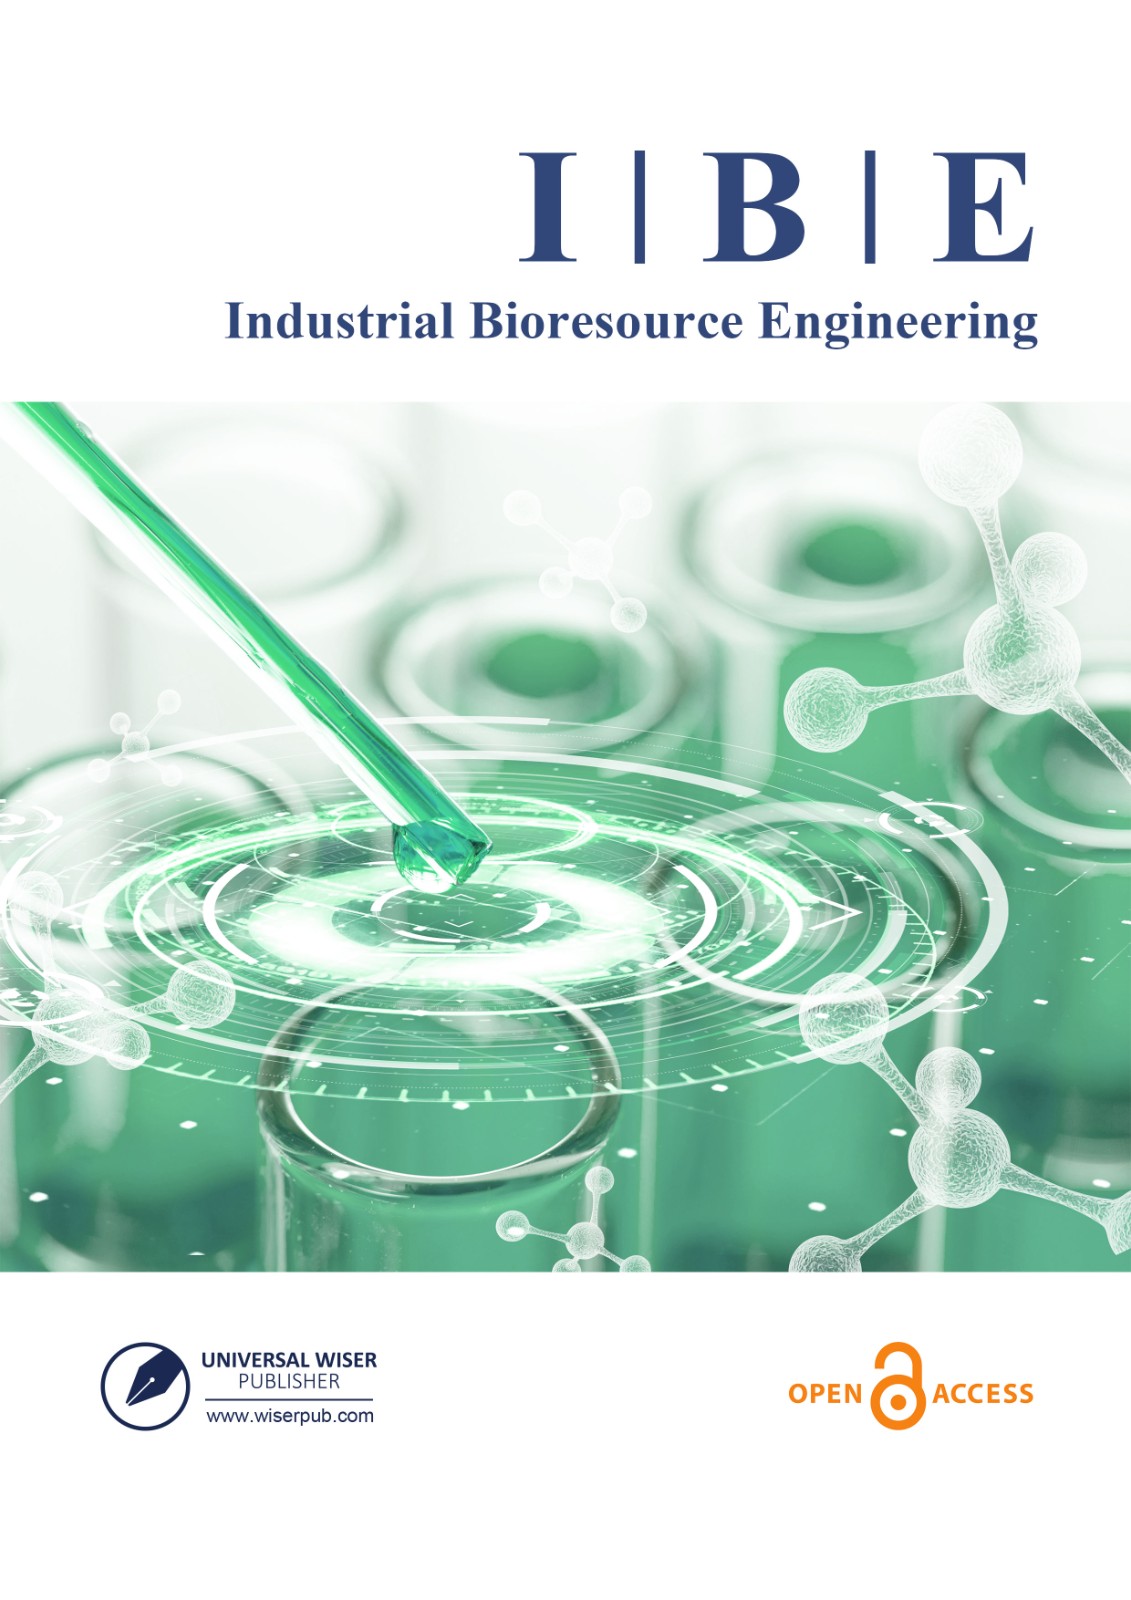 Industrial Bioresource Engineering